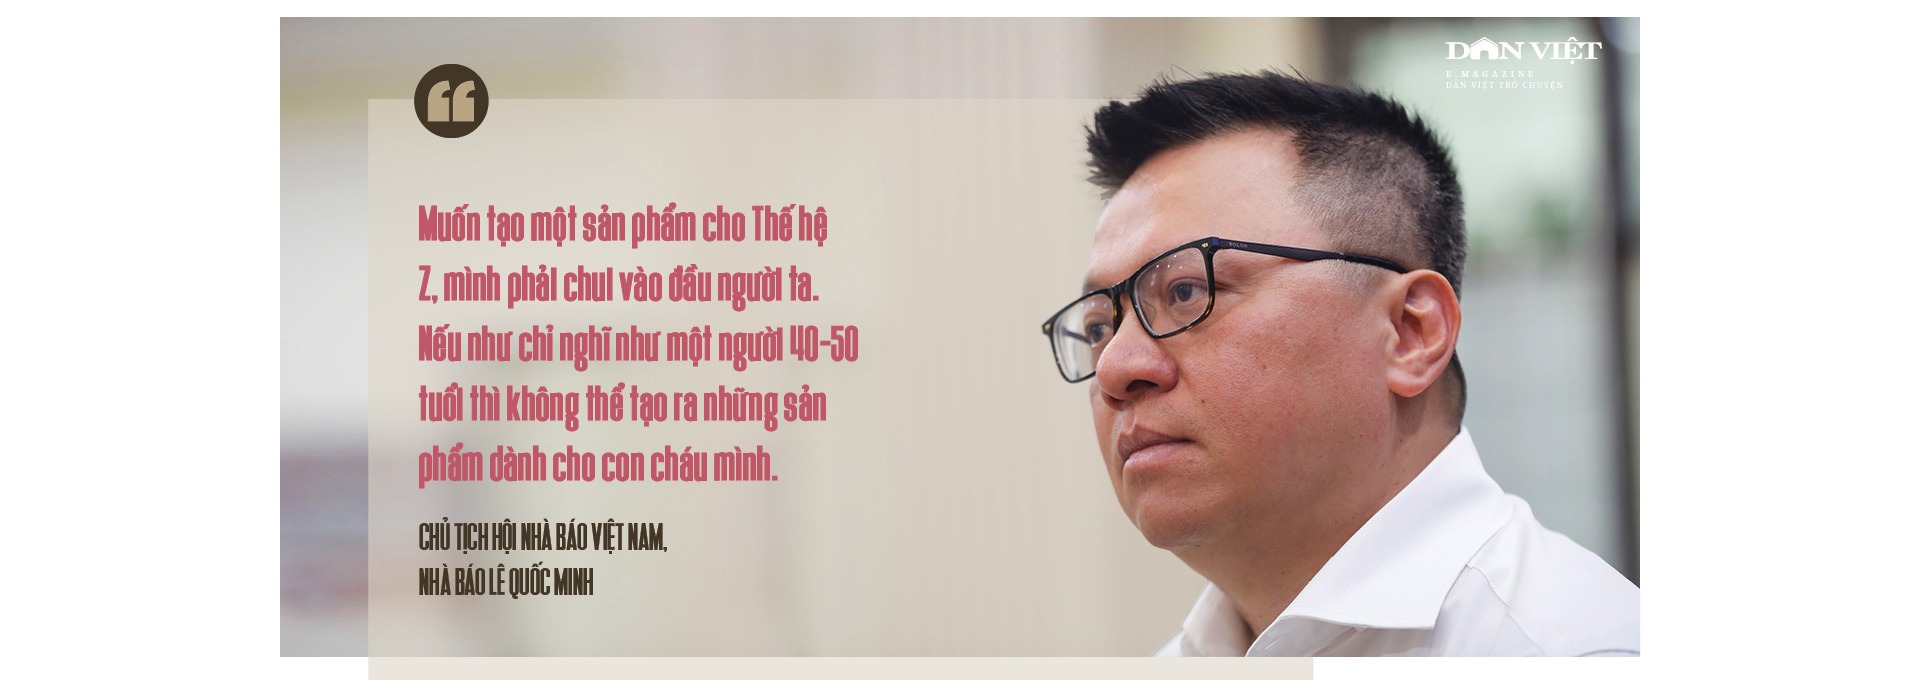 Nhà báo Lê Quốc Minh, Chủ tịch Hội Nhà báo Việt Nam: Khác biệt bằng tư duy và sáng tạo - Ảnh 7.